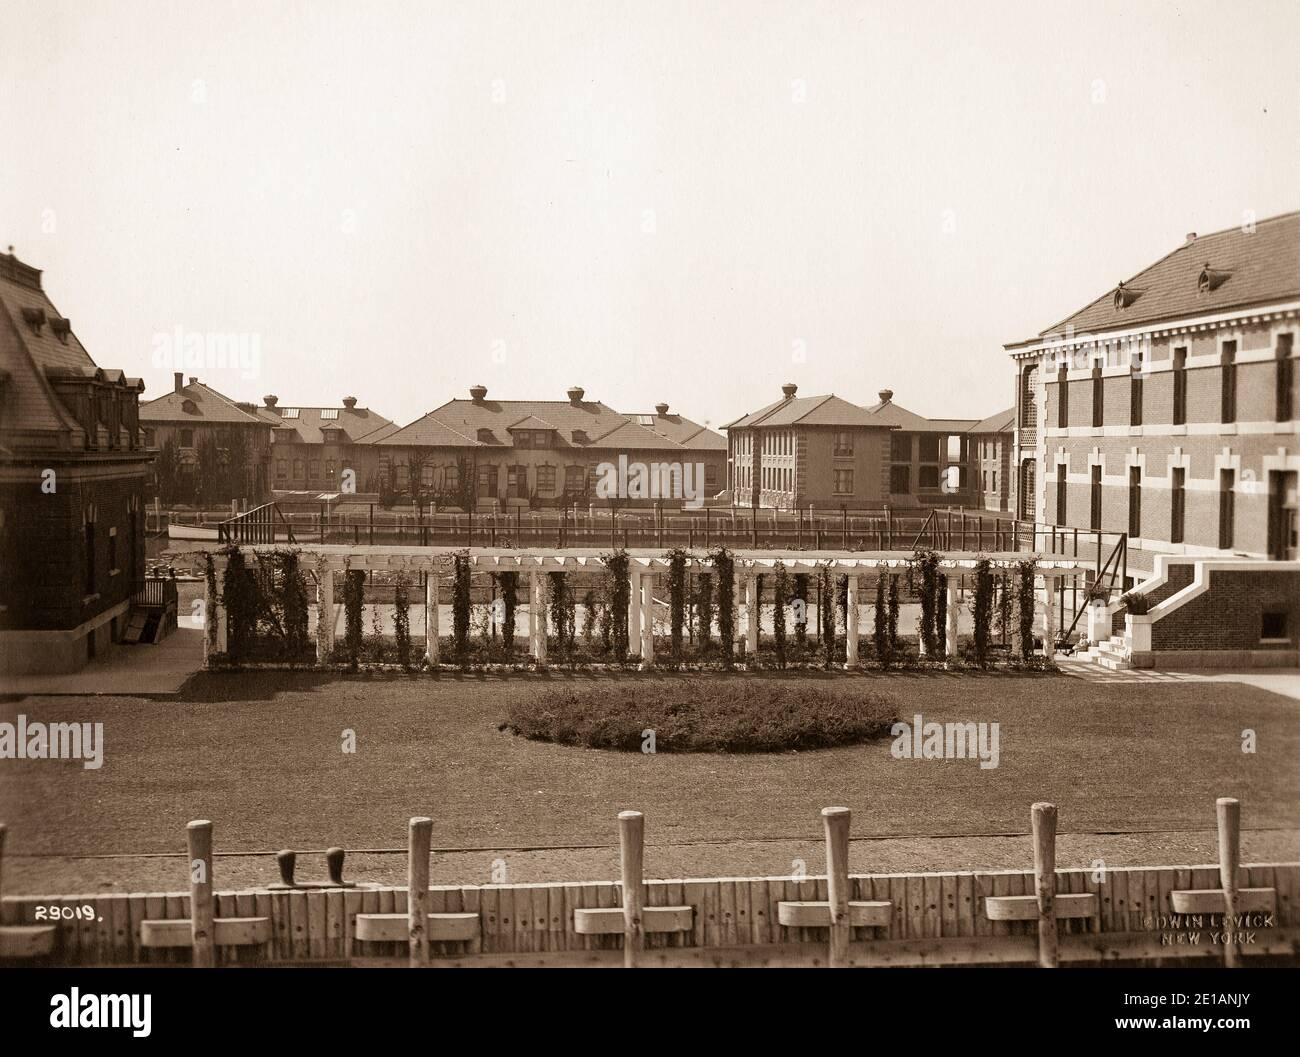 Ellis Island - nel 19 ° secolo, Ellis Island era il sito di Fort Gibson e più tardi divenne una rivista navale. La prima stazione di ispezione è stata aperta nel 1892 e distrutta da un incendio nel 1897. La seconda stazione è stata inaugurata nel 1900 e ospitava strutture per le quarantene mediche e per i lavoratori immigrati. Dopo il 1924, Ellis Island fu utilizzata principalmente come centro di detenzione per i migranti. Sia durante la prima guerra mondiale che durante la seconda guerra mondiale le sue strutture furono utilizzate anche dall'esercito degli Stati Uniti per detenere prigionieri di guerra. Foto Stock